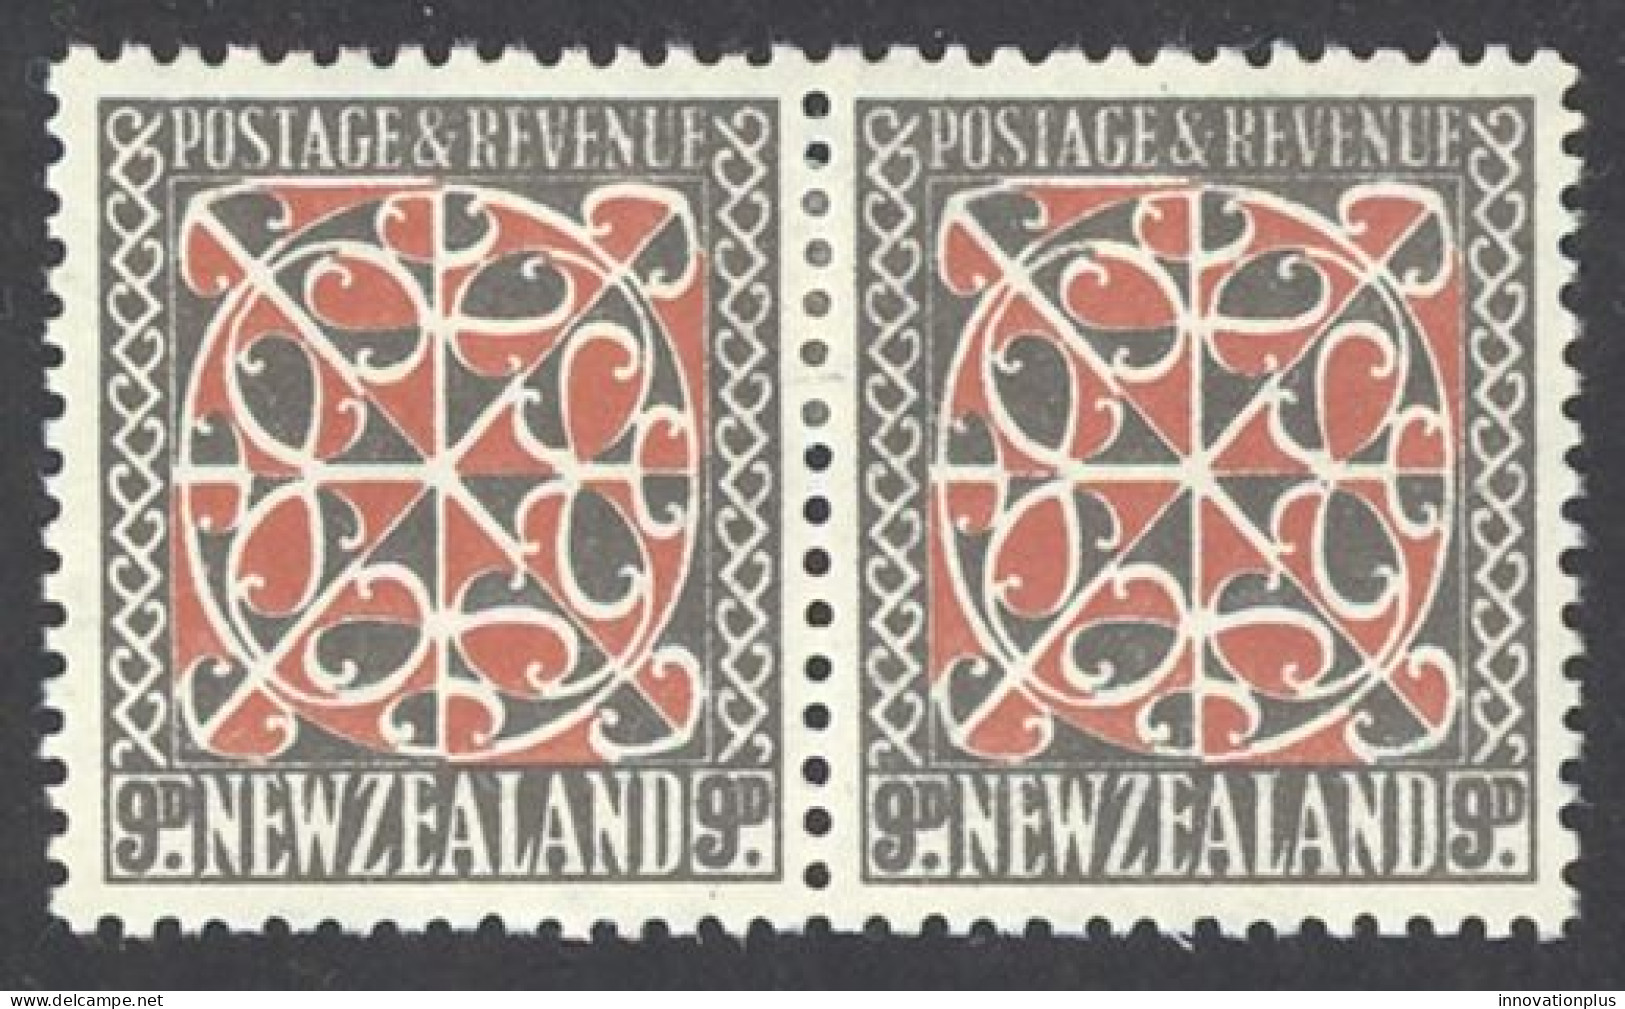 New Zealand Sc# 213 MH Pair 1936-1942 9p Maori Panel - Nuevos